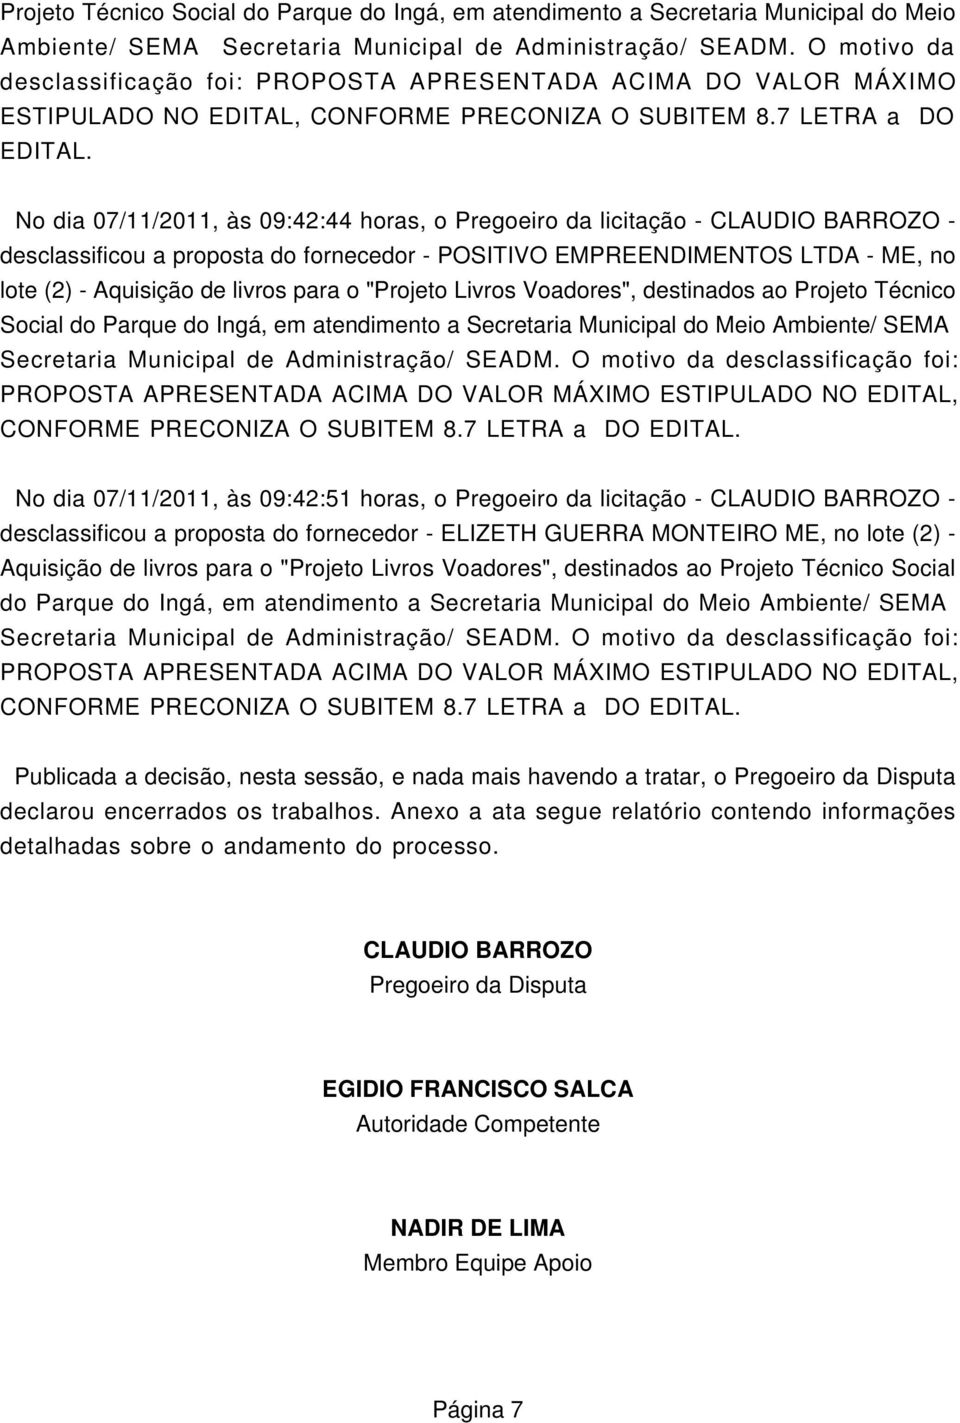 No dia 07/11/2011, às 09:42:44 horas, o Pregoeiro da licitação - CLAUDIO BARROZO - desclassificou a proposta do fornecedor - POSITIVO EMPREENDIMENTOS LTDA - ME, no lote (2) - Aquisição de livros para